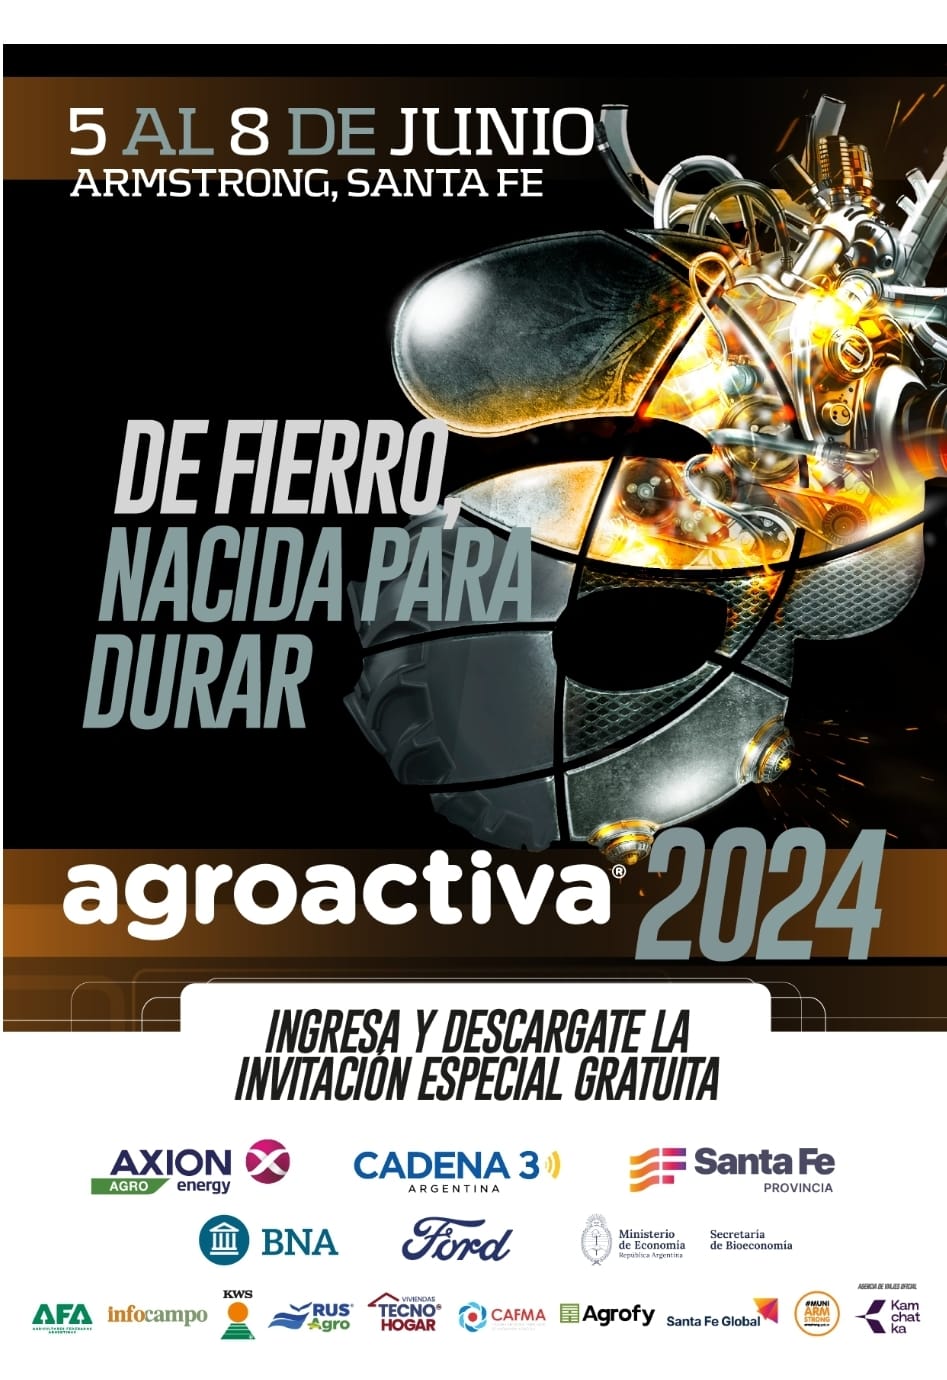 ¡Descargate la invitación especial gratuita para Agroactiva 2024!